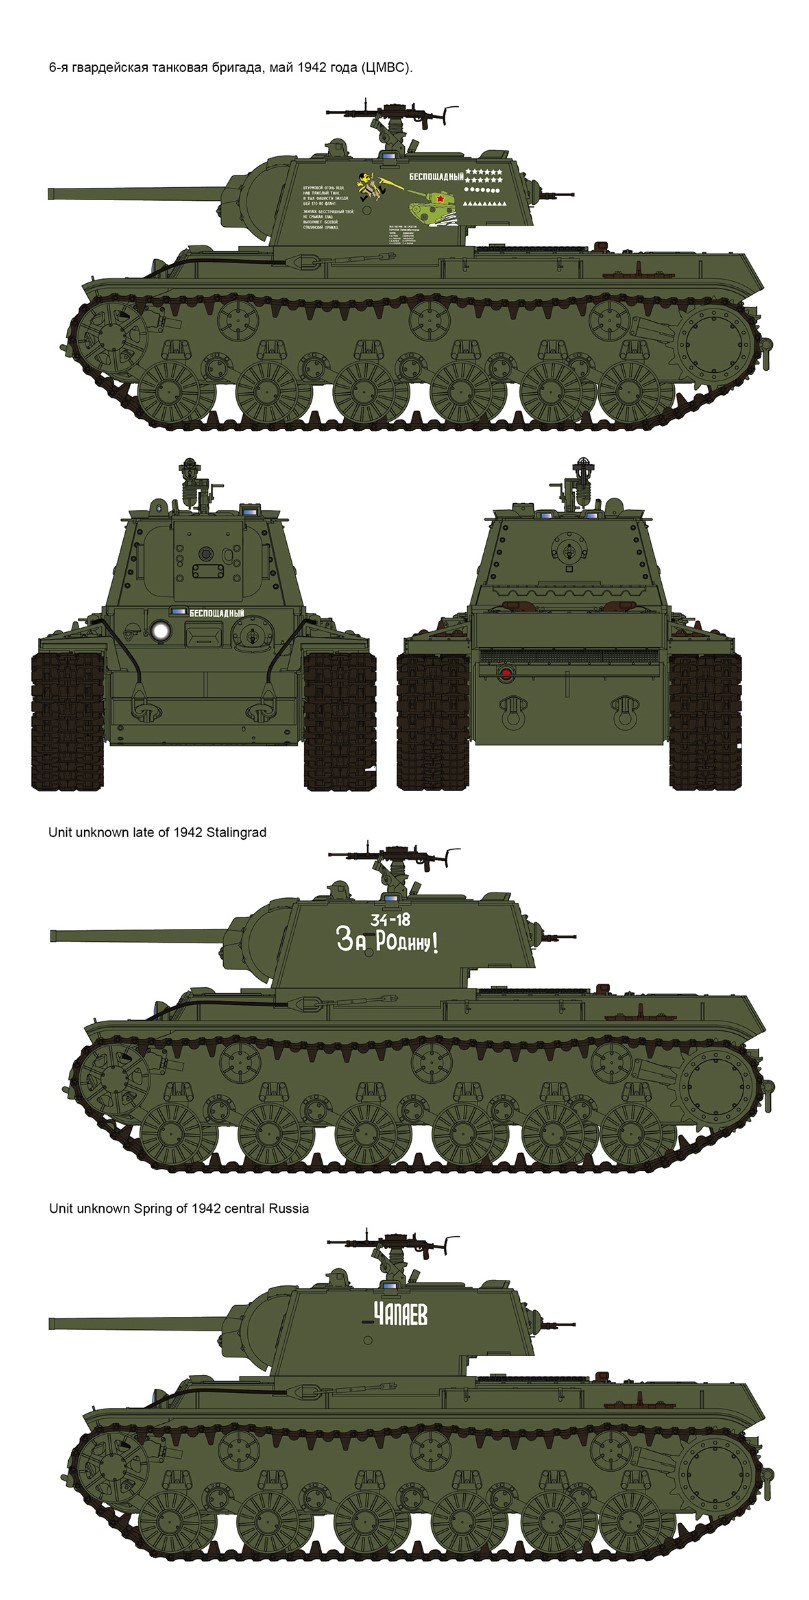 Russian Heavy Tank KV-1 Model 1942 Simplified Turret